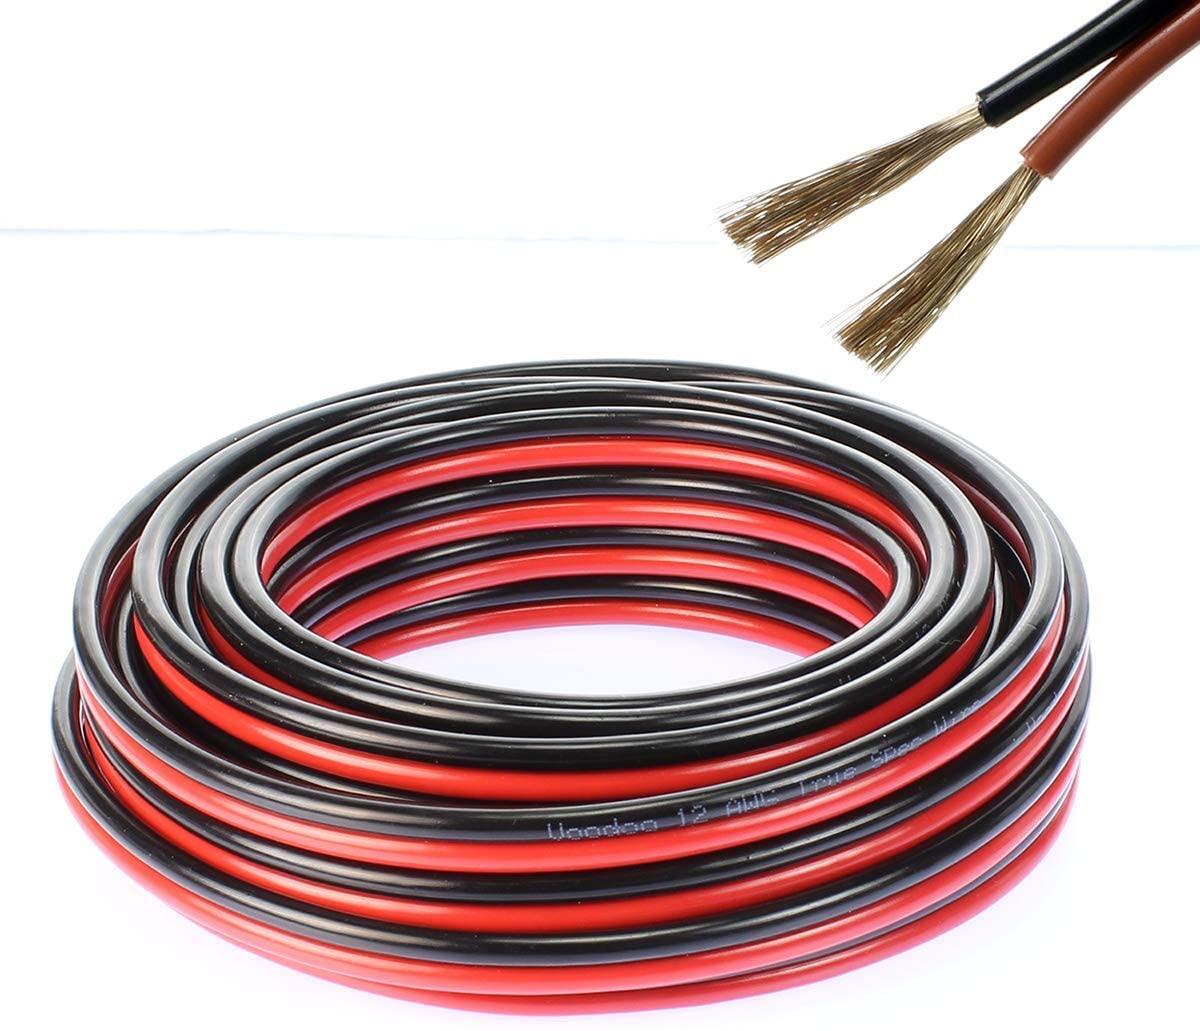 สายไฟ แดงดำ 15awg (1.5 mm²) สายลำโพง สายไฟคู่ สายคู่ electrical wire cable เครื่องเสียง รถยนต์ car a สี ชุด 1 เมตร 5 เส้น สี ชุด 1 เมตร 5 เส้น